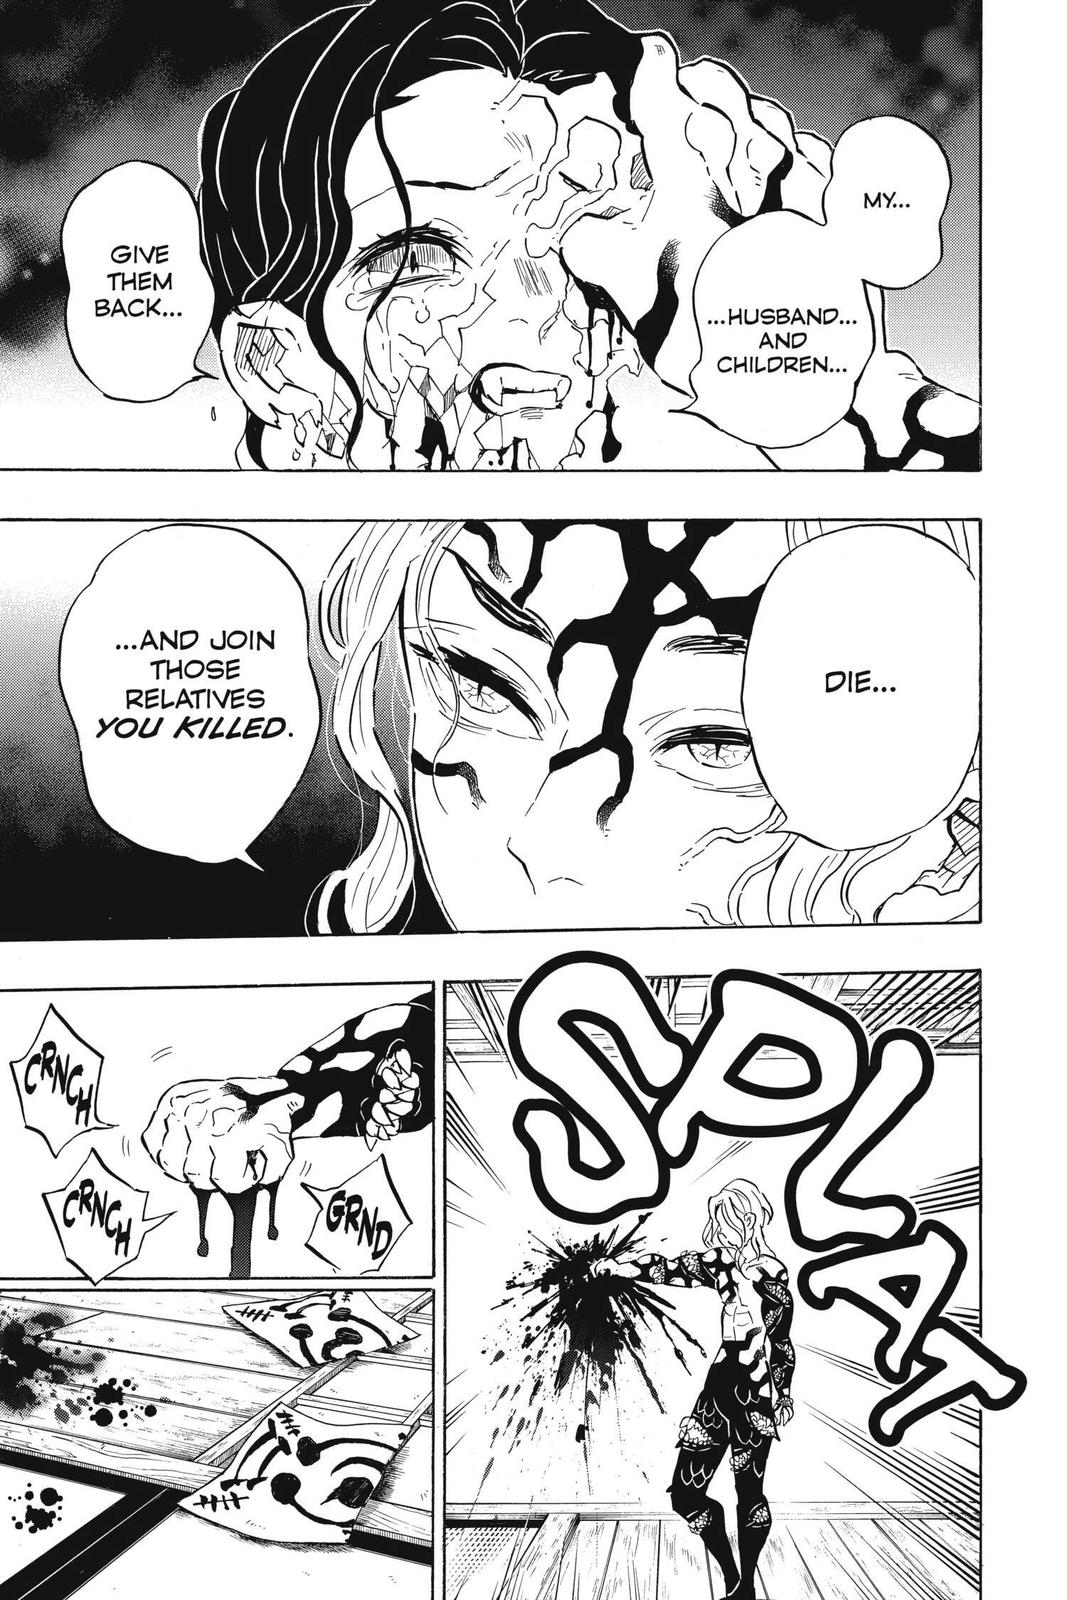 Demon Slayer Manga Manga Chapter - 180 - image 15